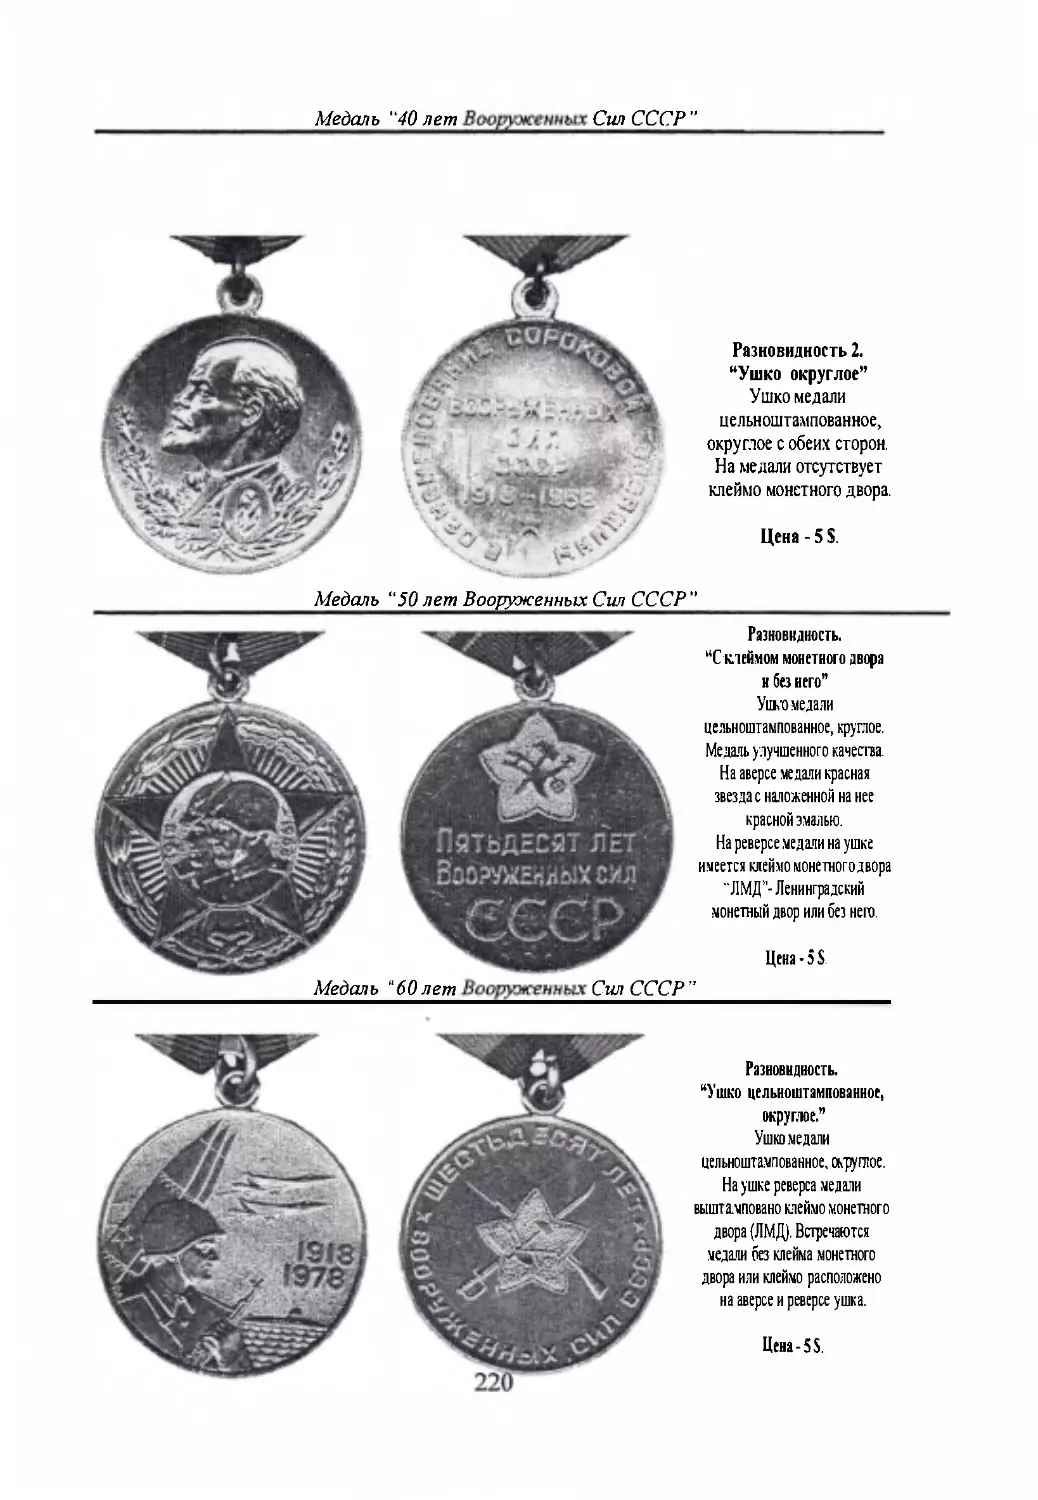 Медаль “50 лет Вооруженным Силам СССР”
Медаль “60 лет Вооруженным Силам СССР”